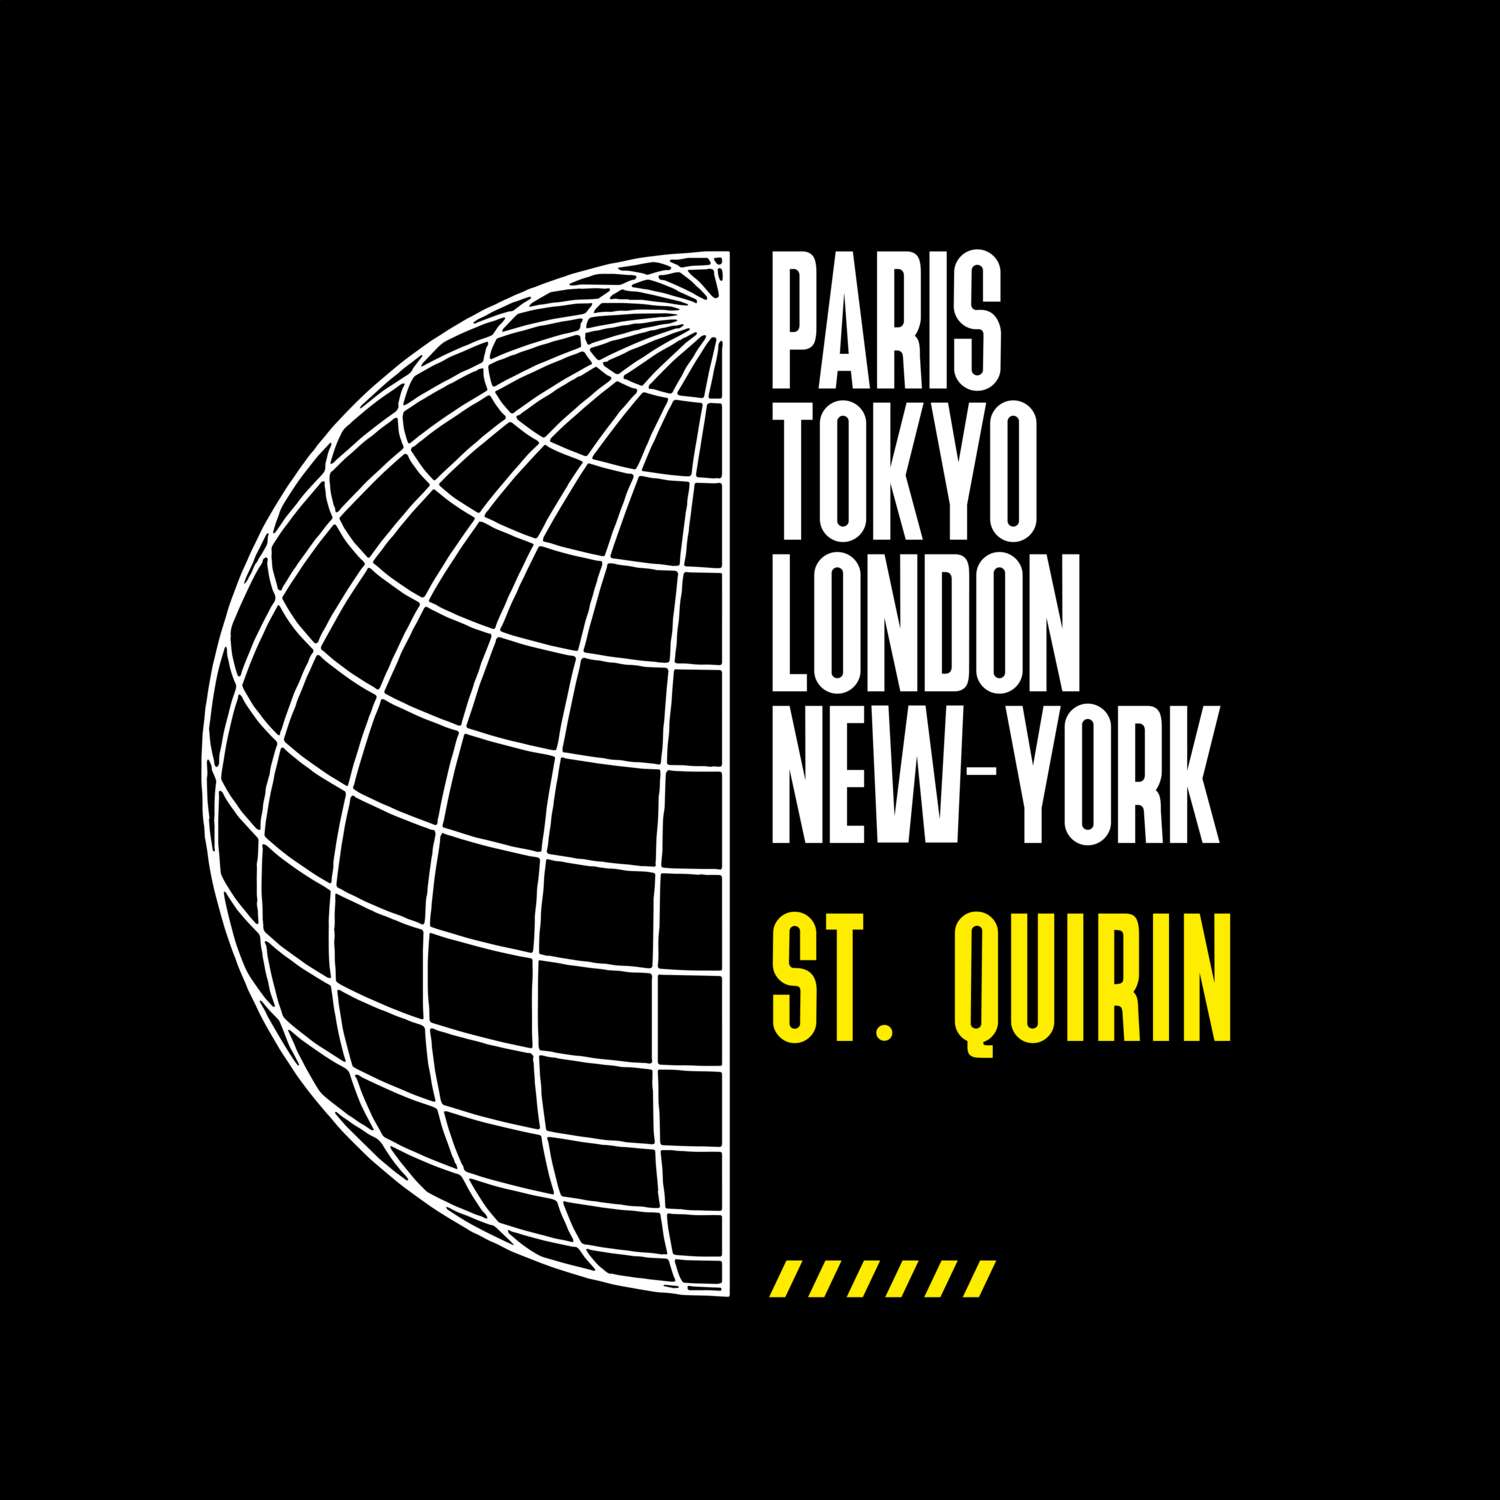 St. Quirin T-Shirt »Paris Tokyo London«